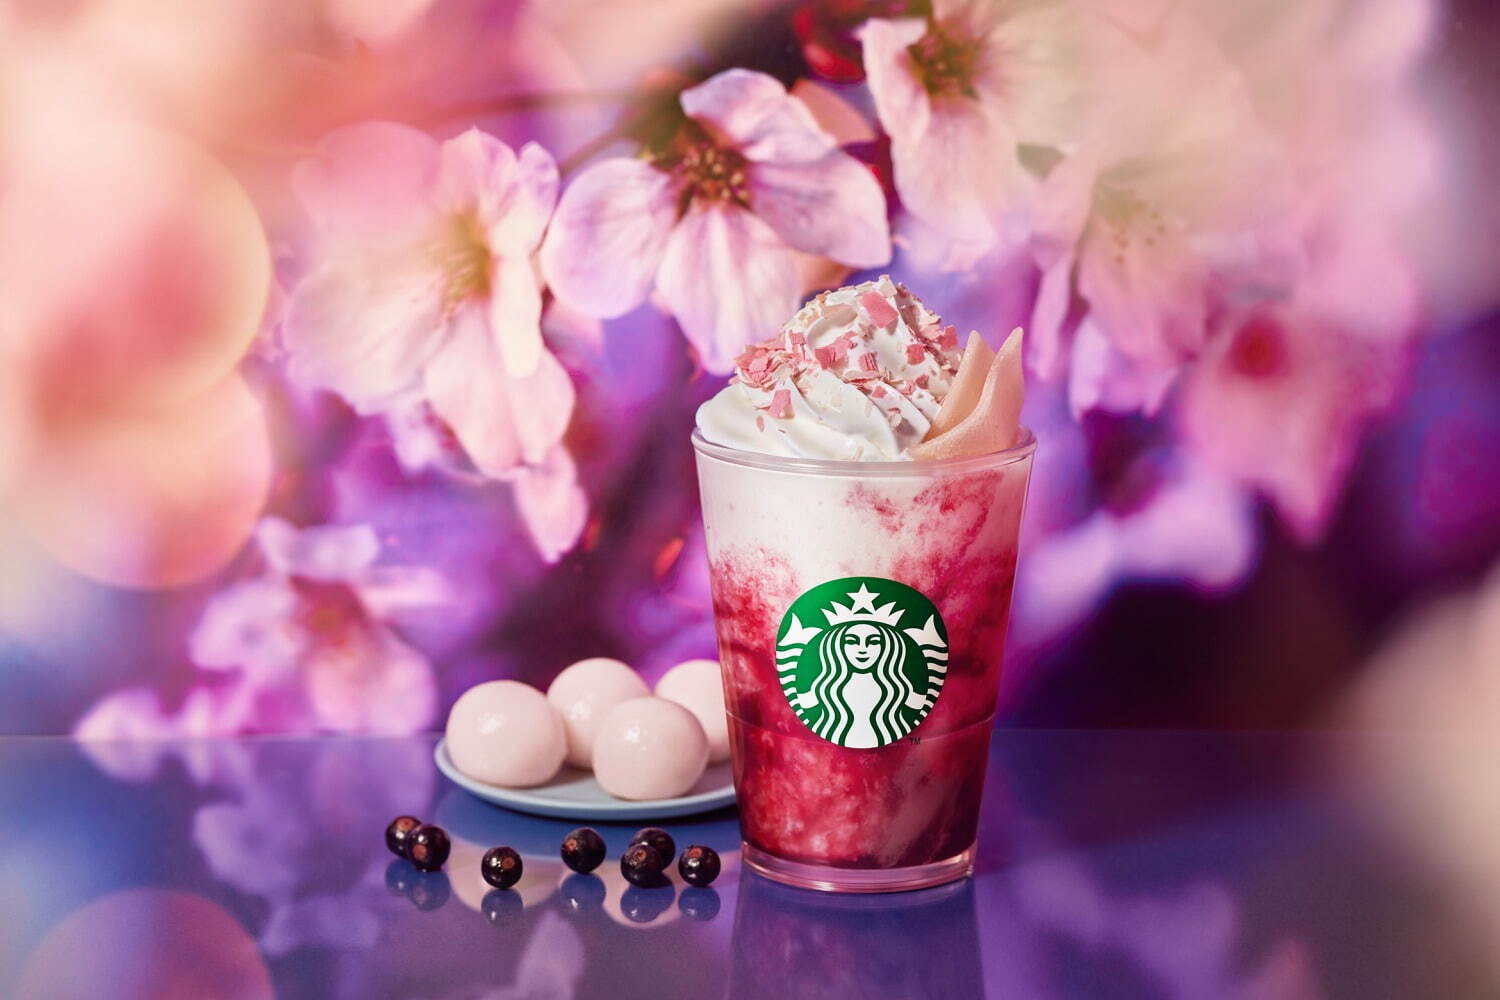 スタバ「さくらカシス ストロベリー 白玉 フラペチーノ」幻想的な夜桜をカシスと桜で表現